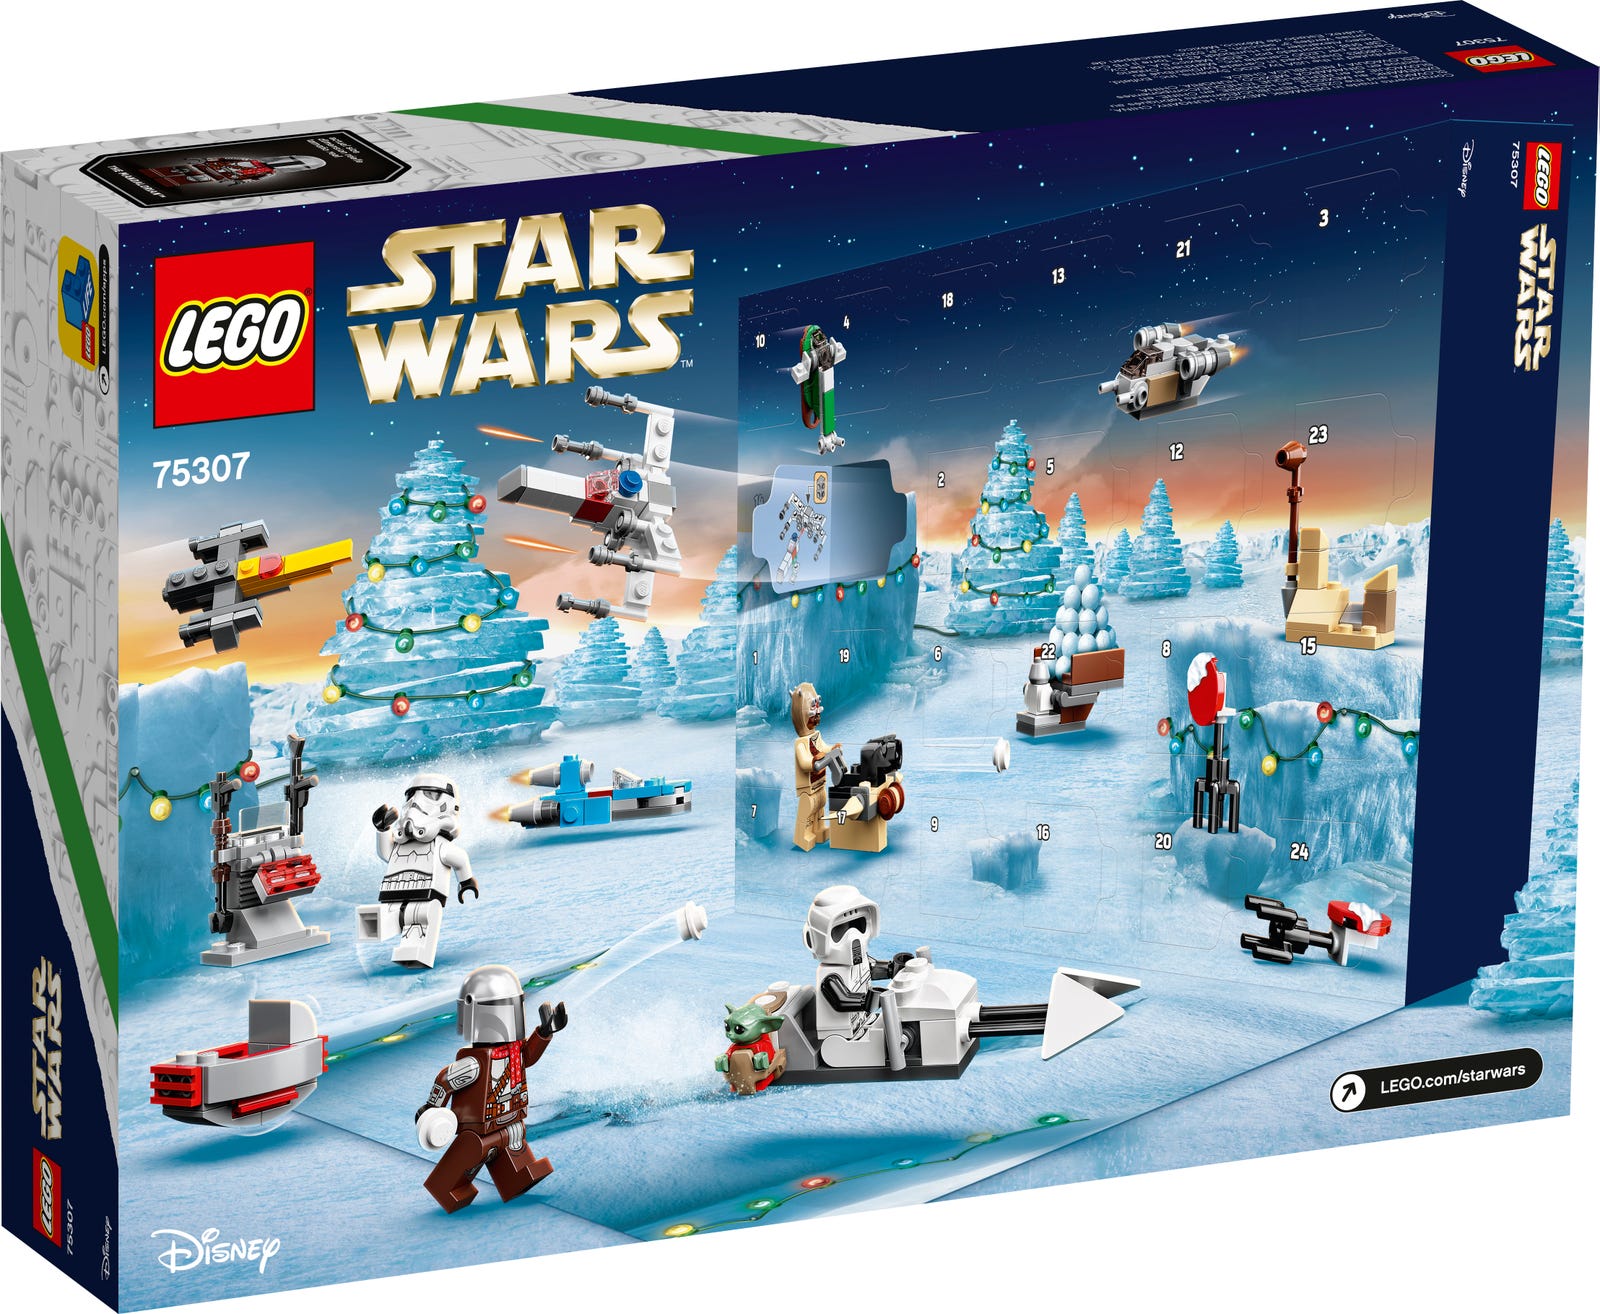 Lego Star Wars Advent Calendar 2021